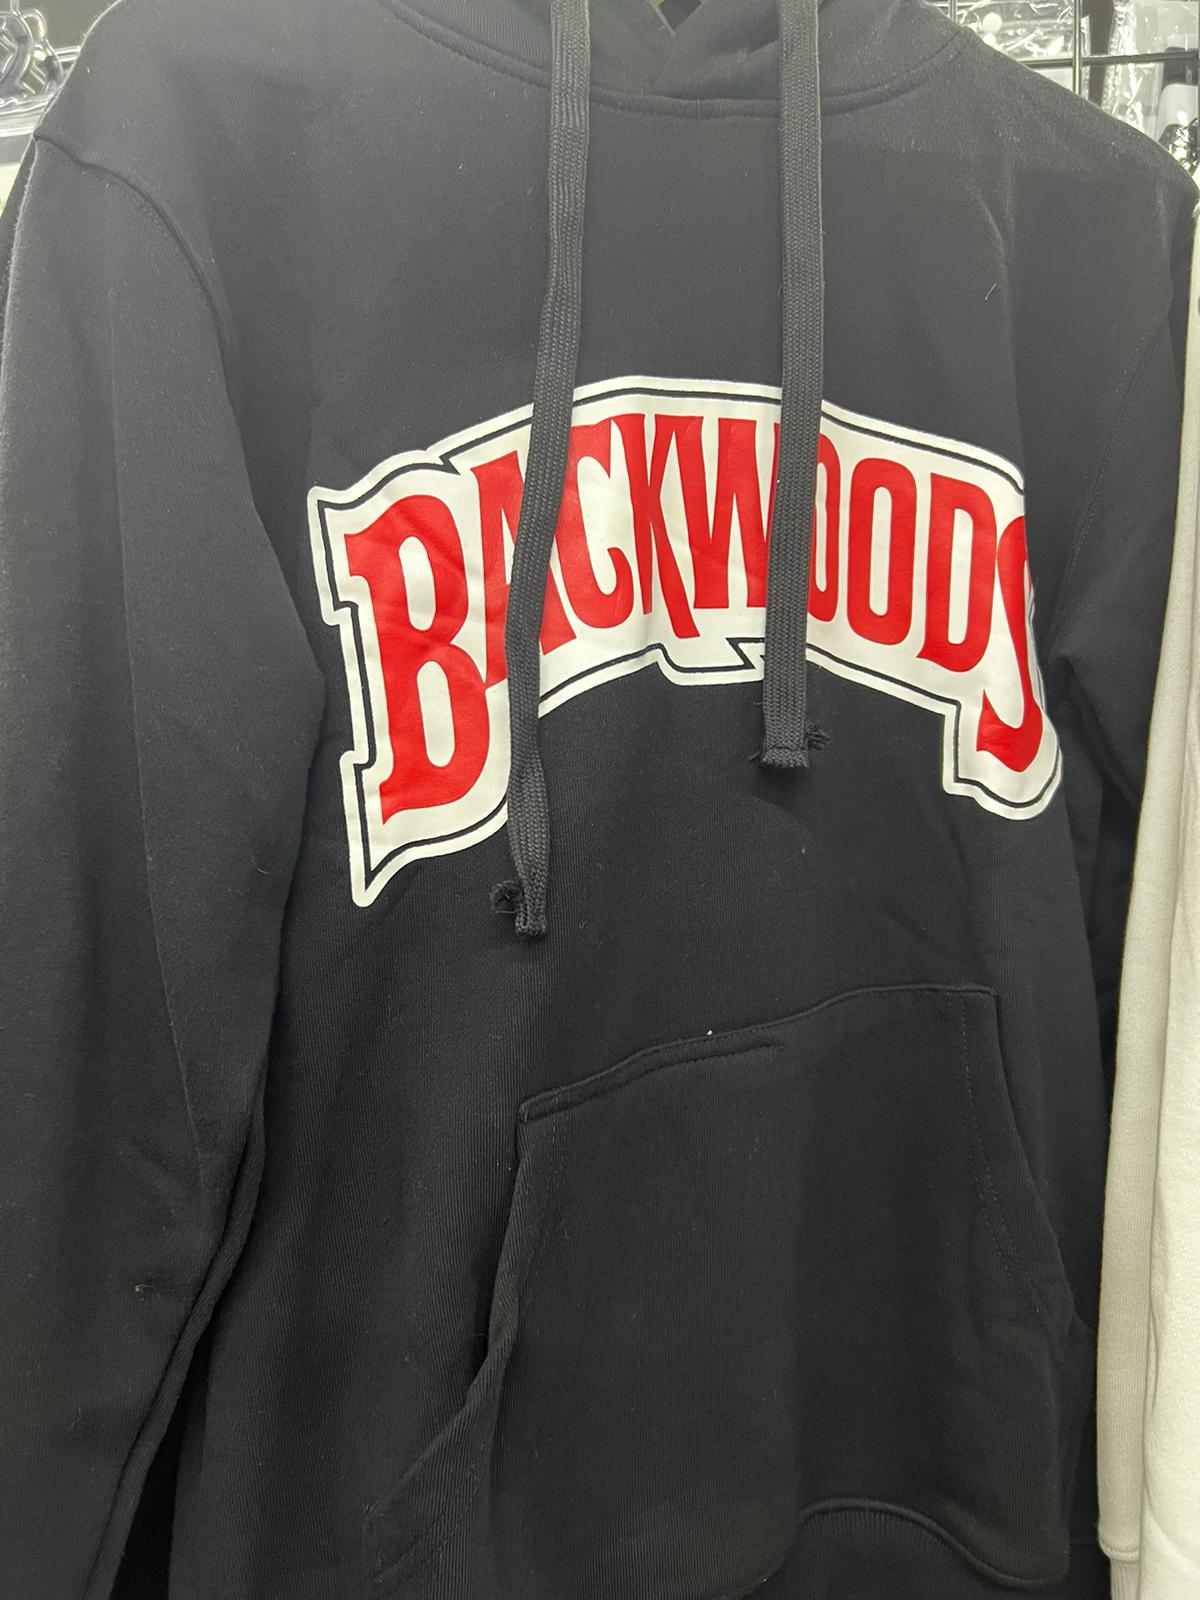 Backwoods Hoodie - Black (4X-Large)